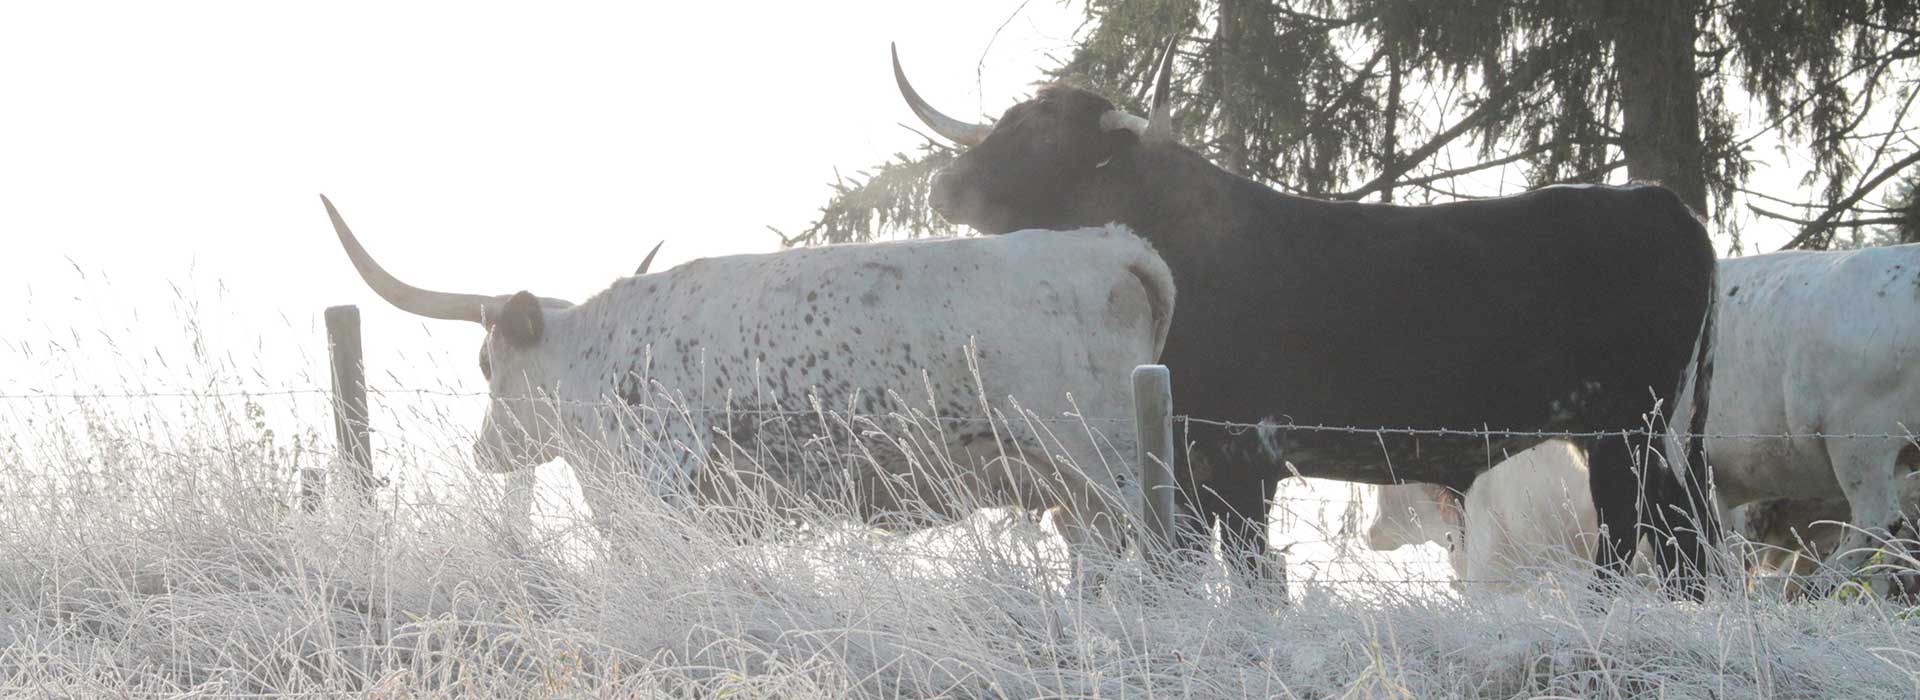 Texas Longhorn Zucht, Anpaarung Zuchtkuh und Zuchtbulle